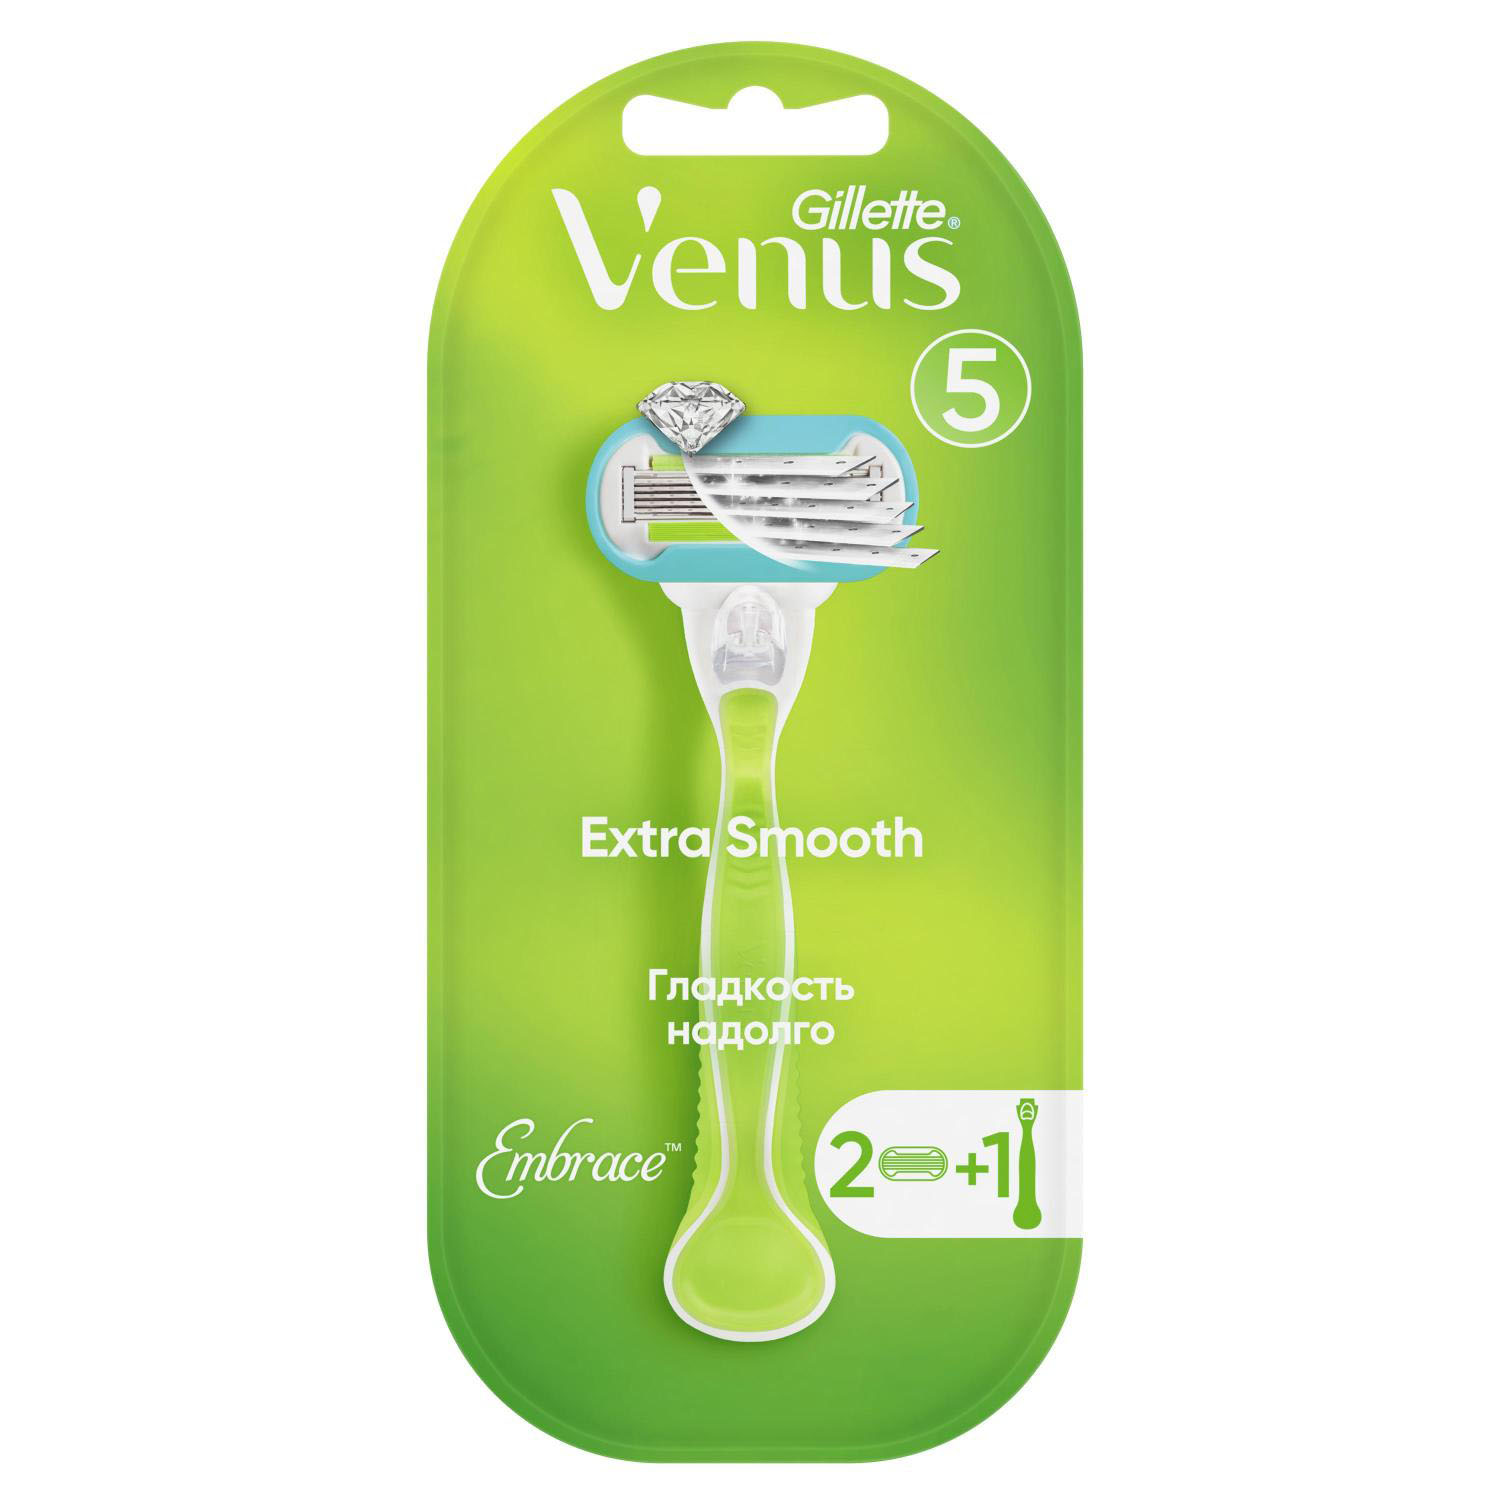 Жиллетт станок для бритья Венус Эмбрейс +2кассеты жиллетт кассеты венус эмбрейс 2